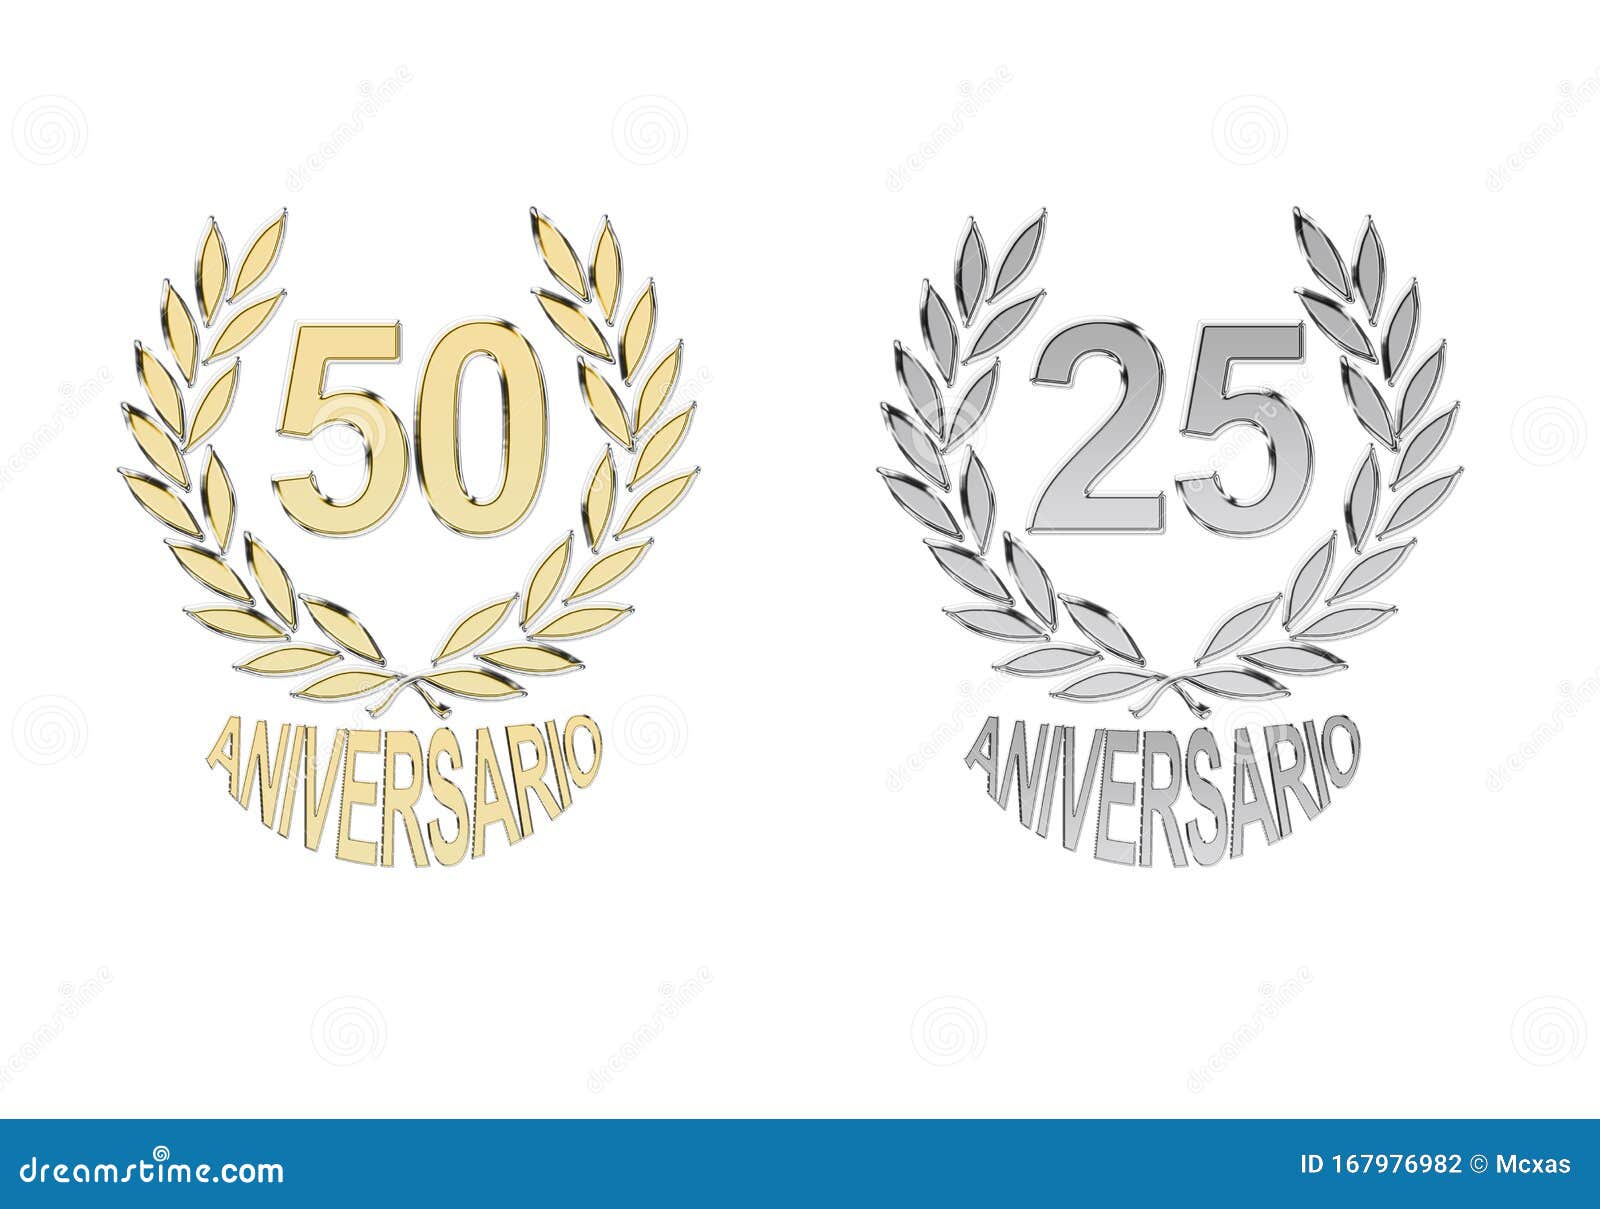  50 and 25 anniversary simbols in spanish